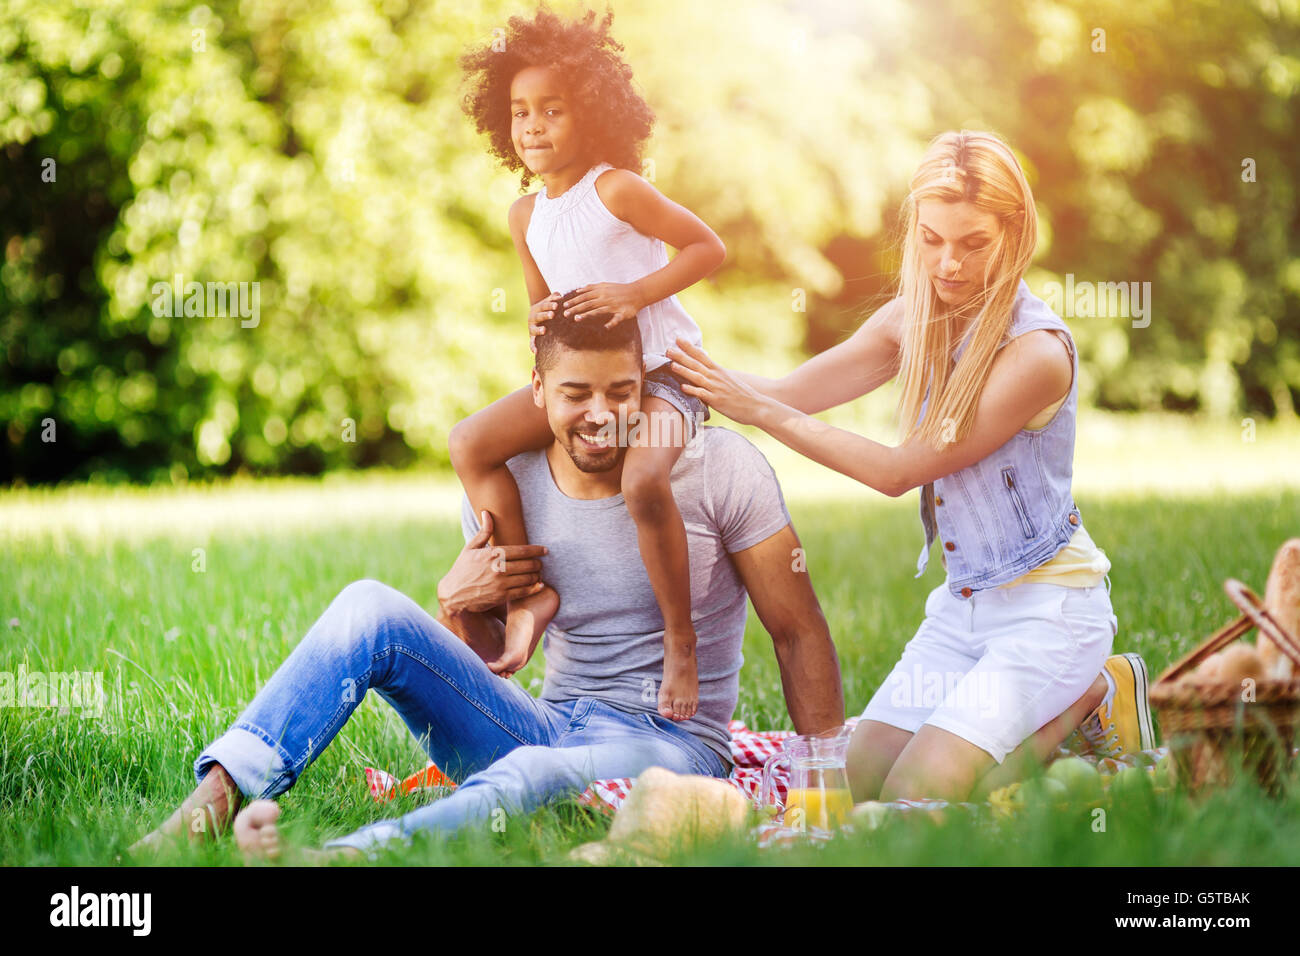 Fröhliche Familie widmet Zeit zusammen am Wochenende Picknick Stockfoto